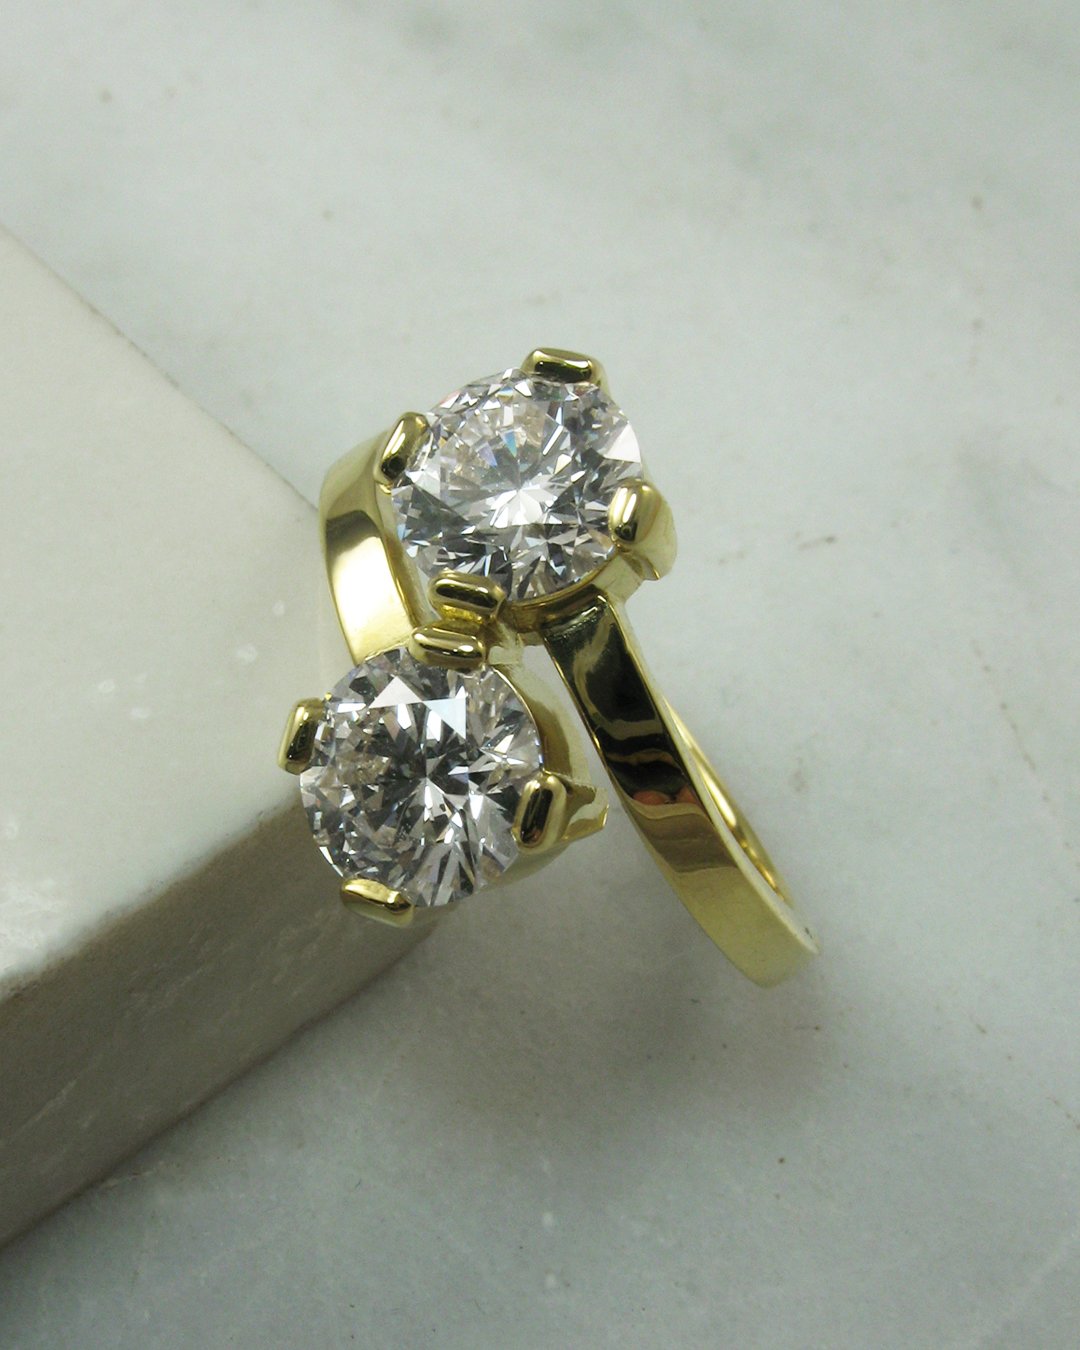 A beautiful two stone twist diamond ring